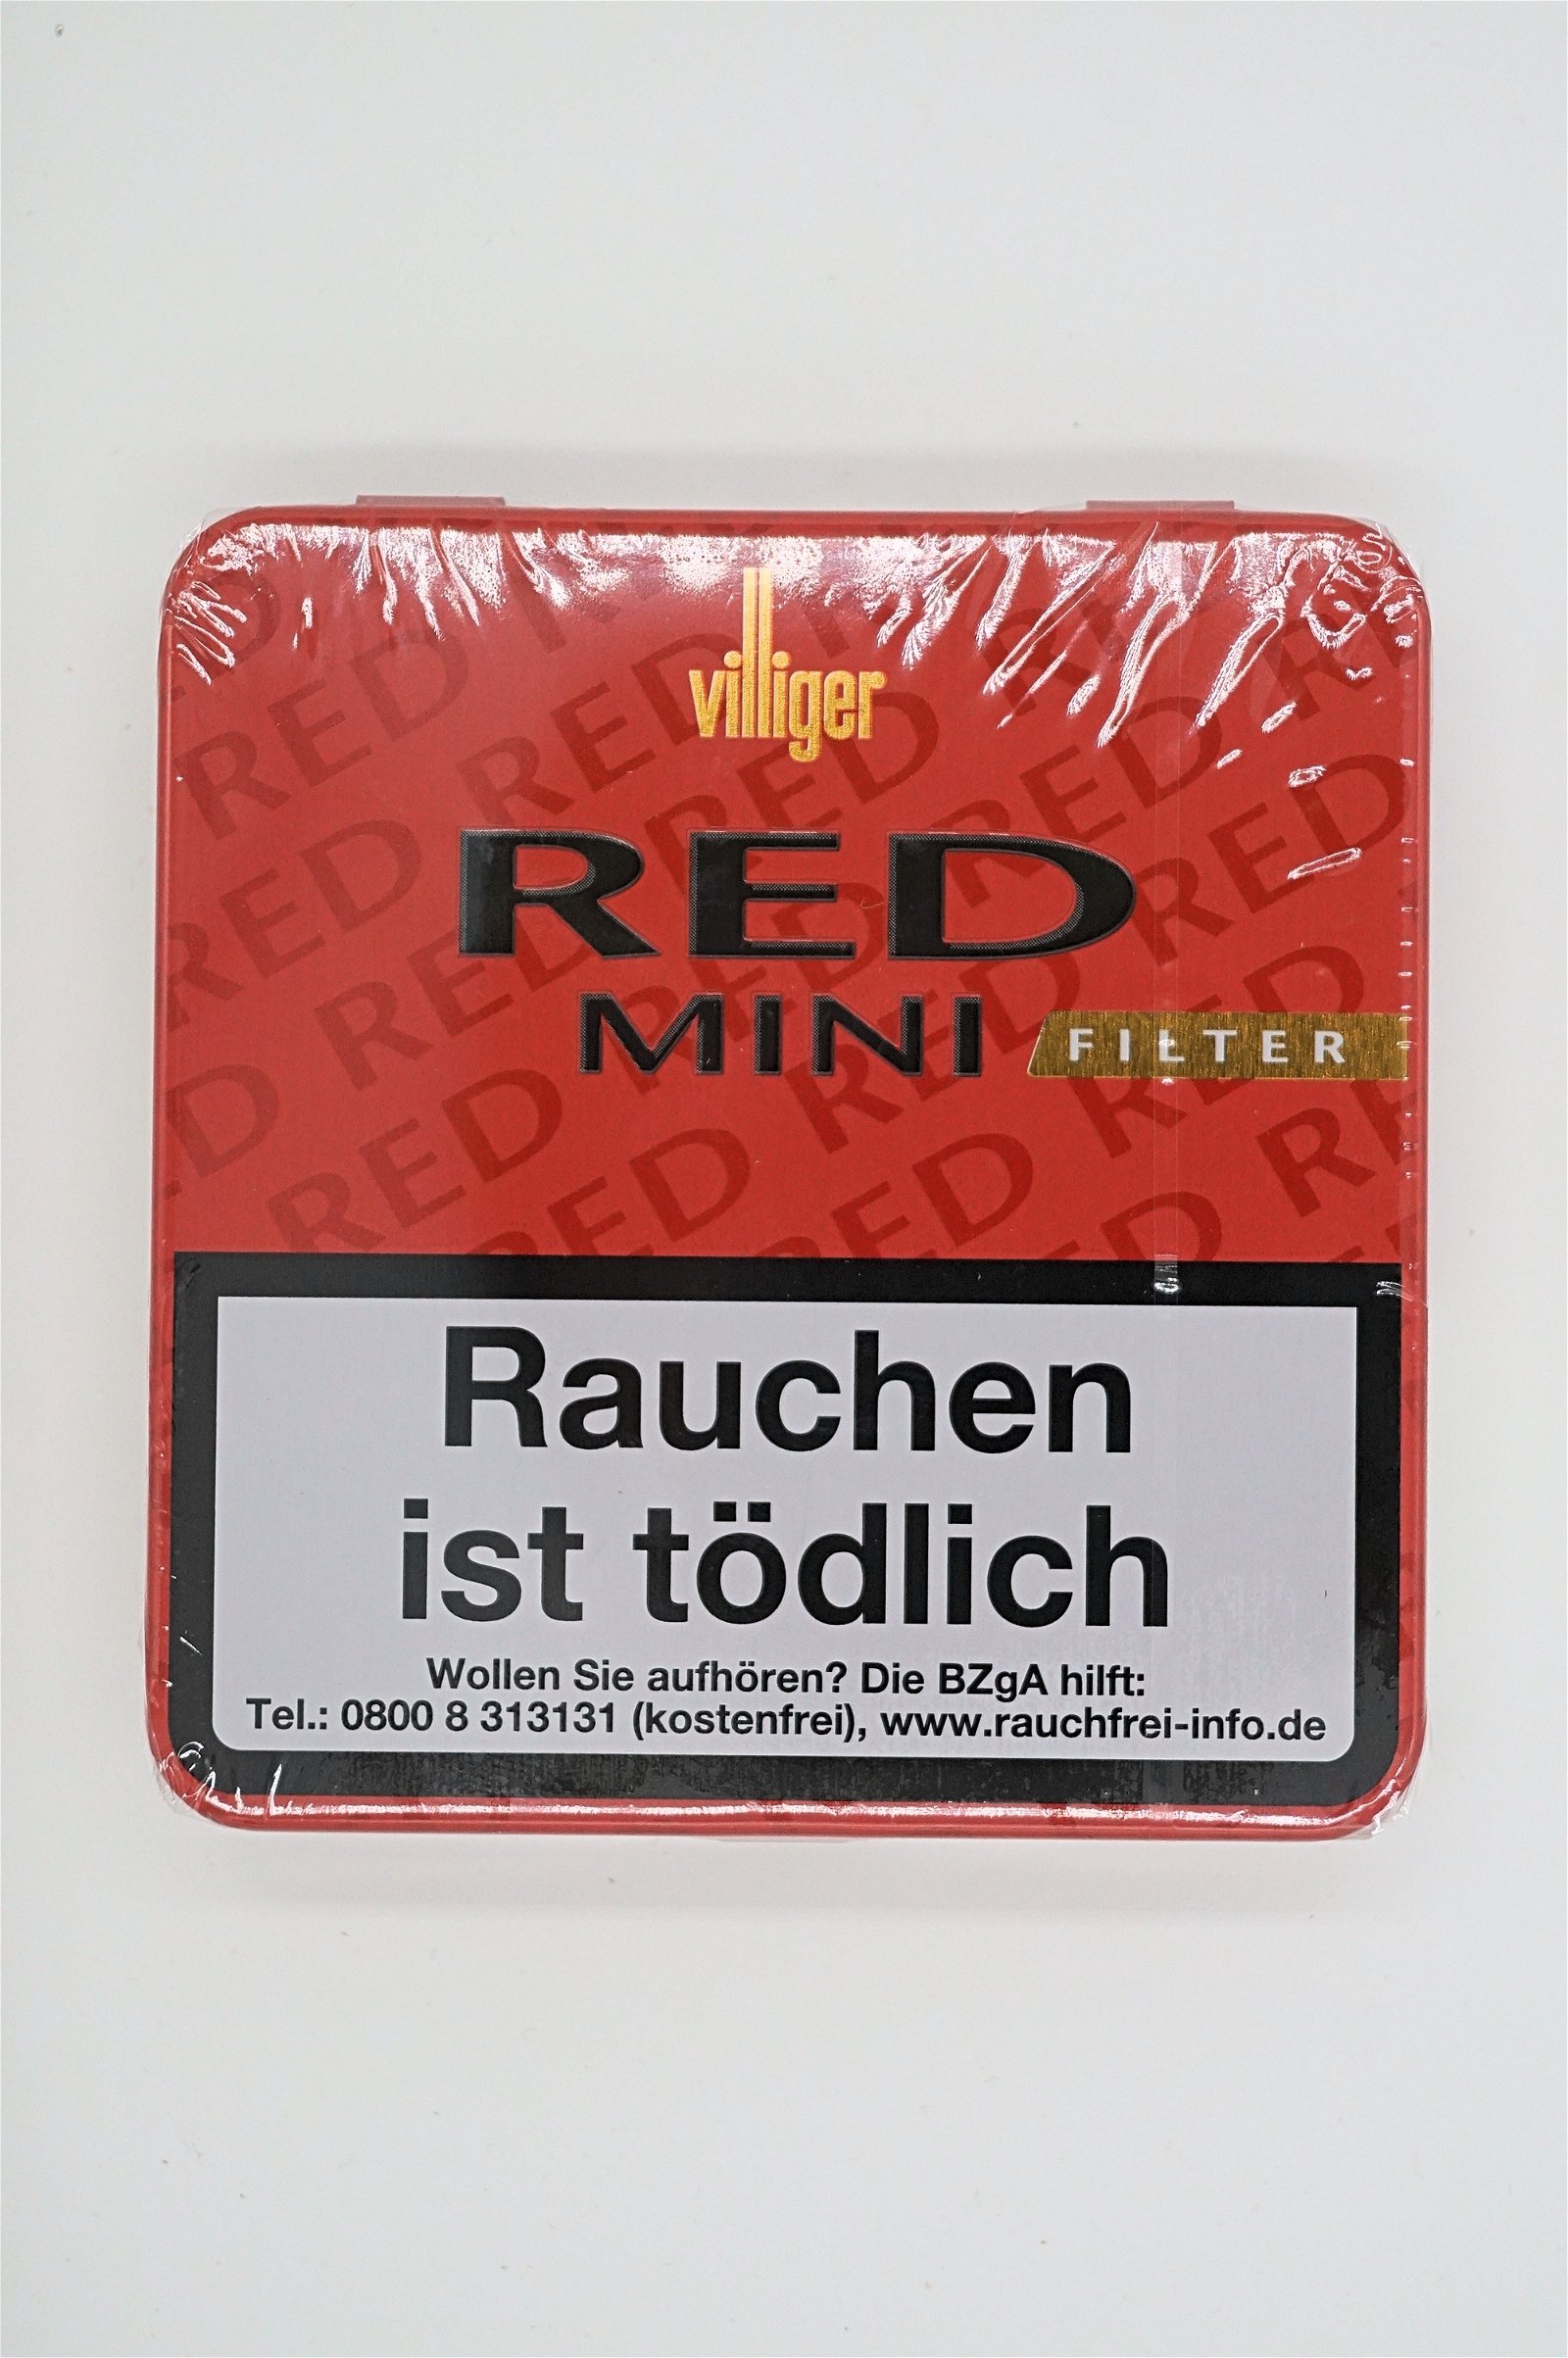 Villiger Red Mini Filter